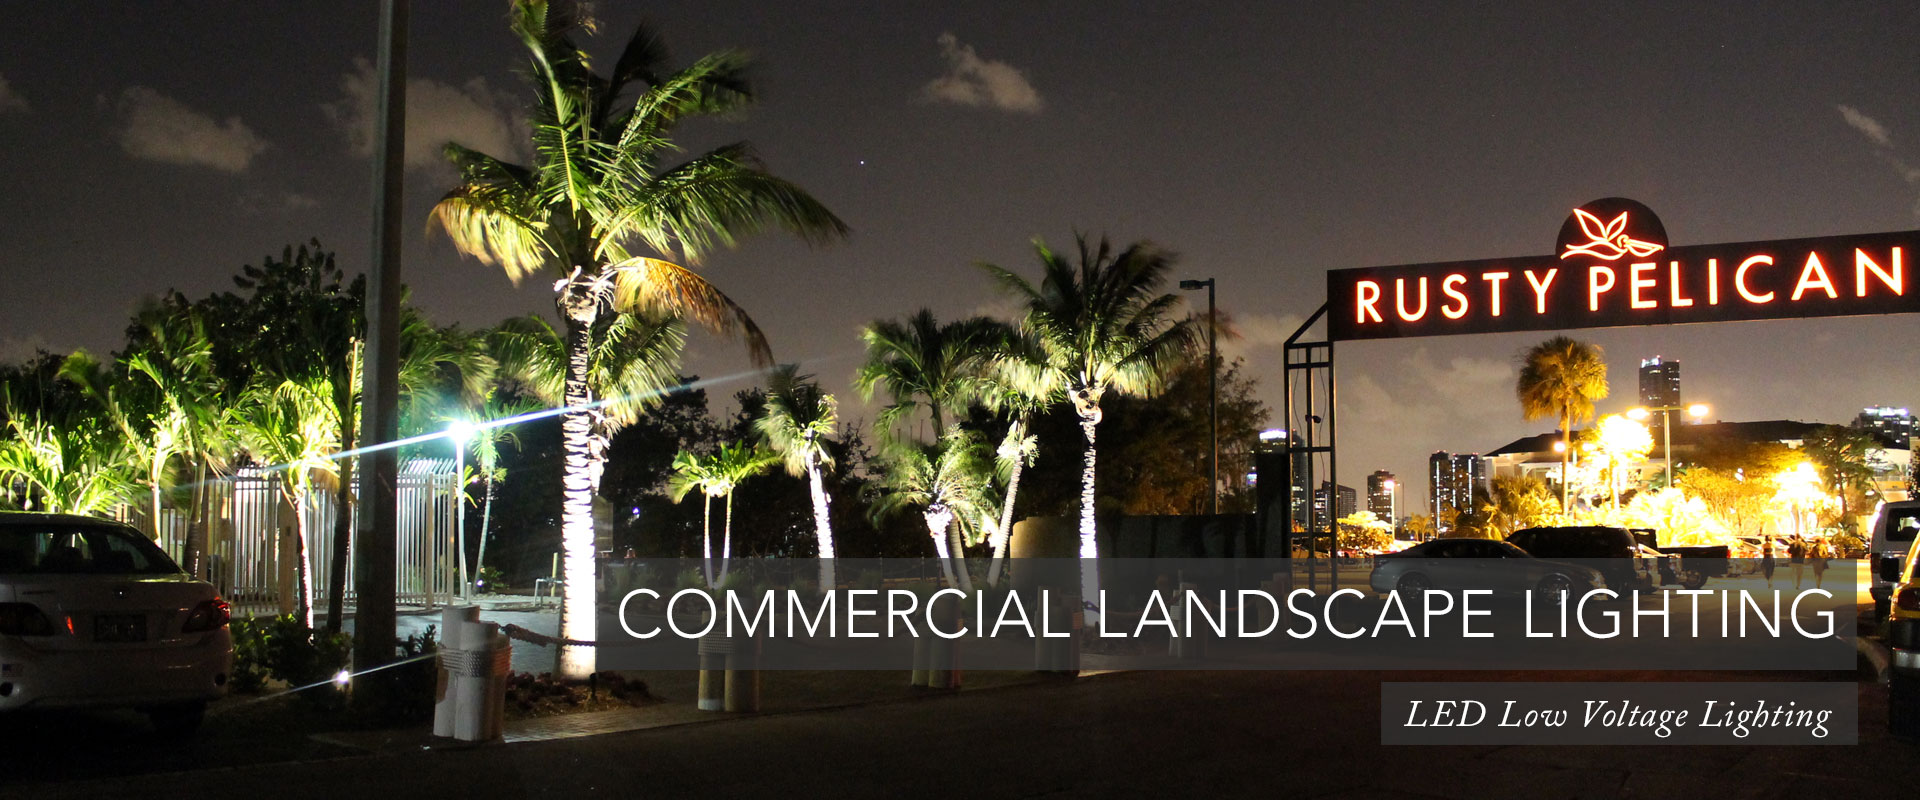 Commercial Landscape Lighting Hero-2